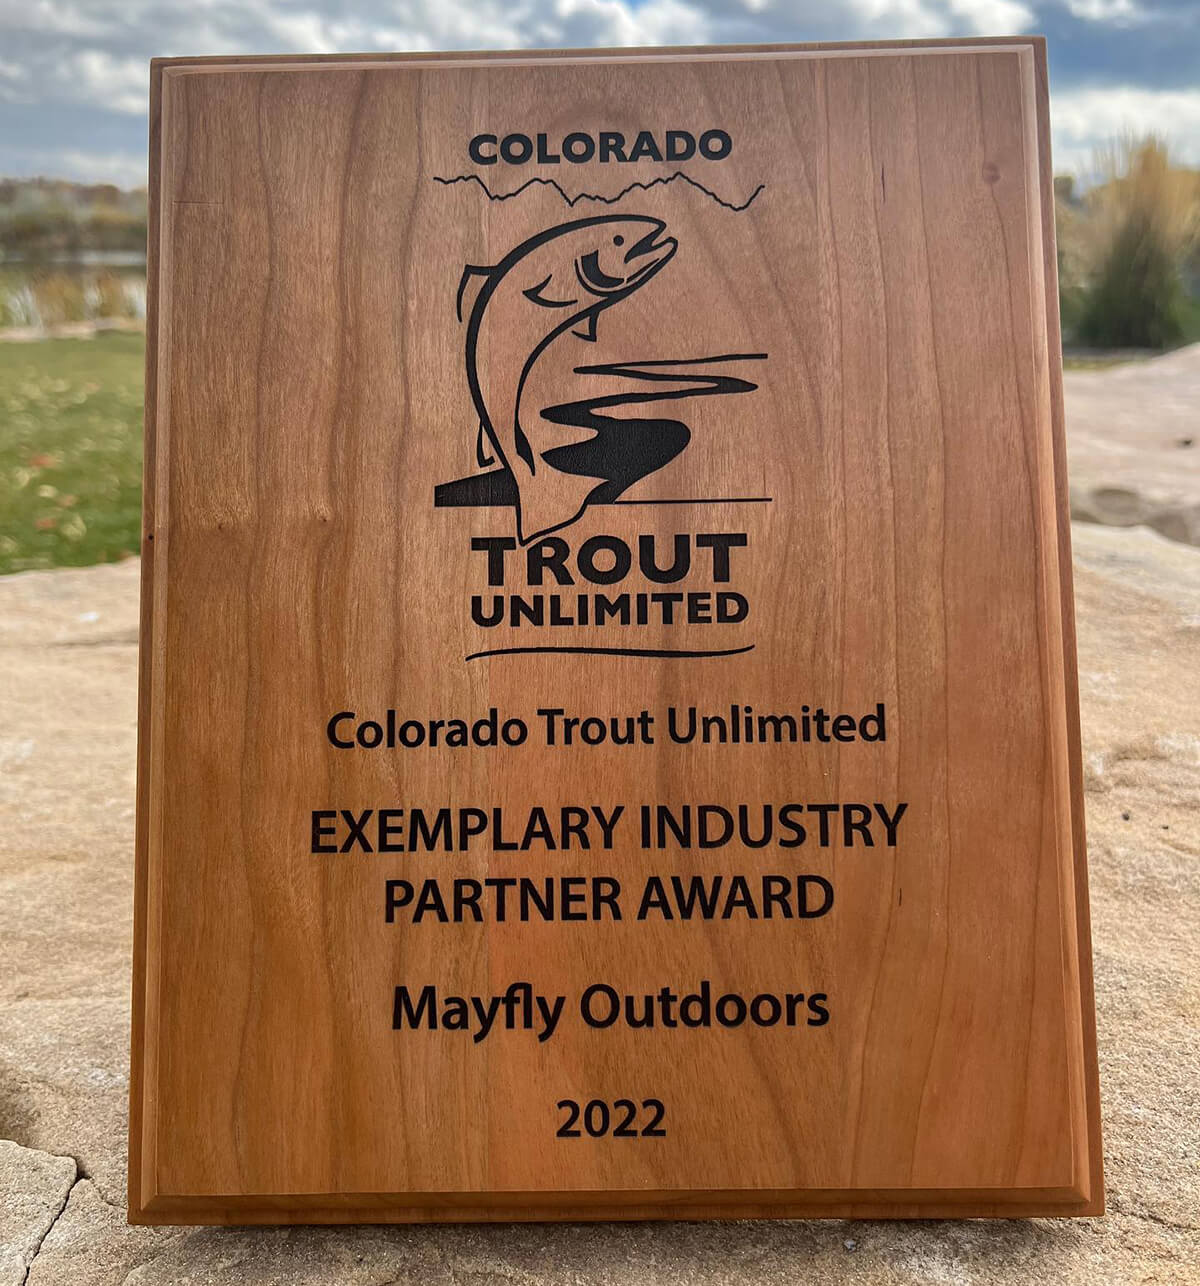 Mayfly Outdoors Wins Industry Partner Award